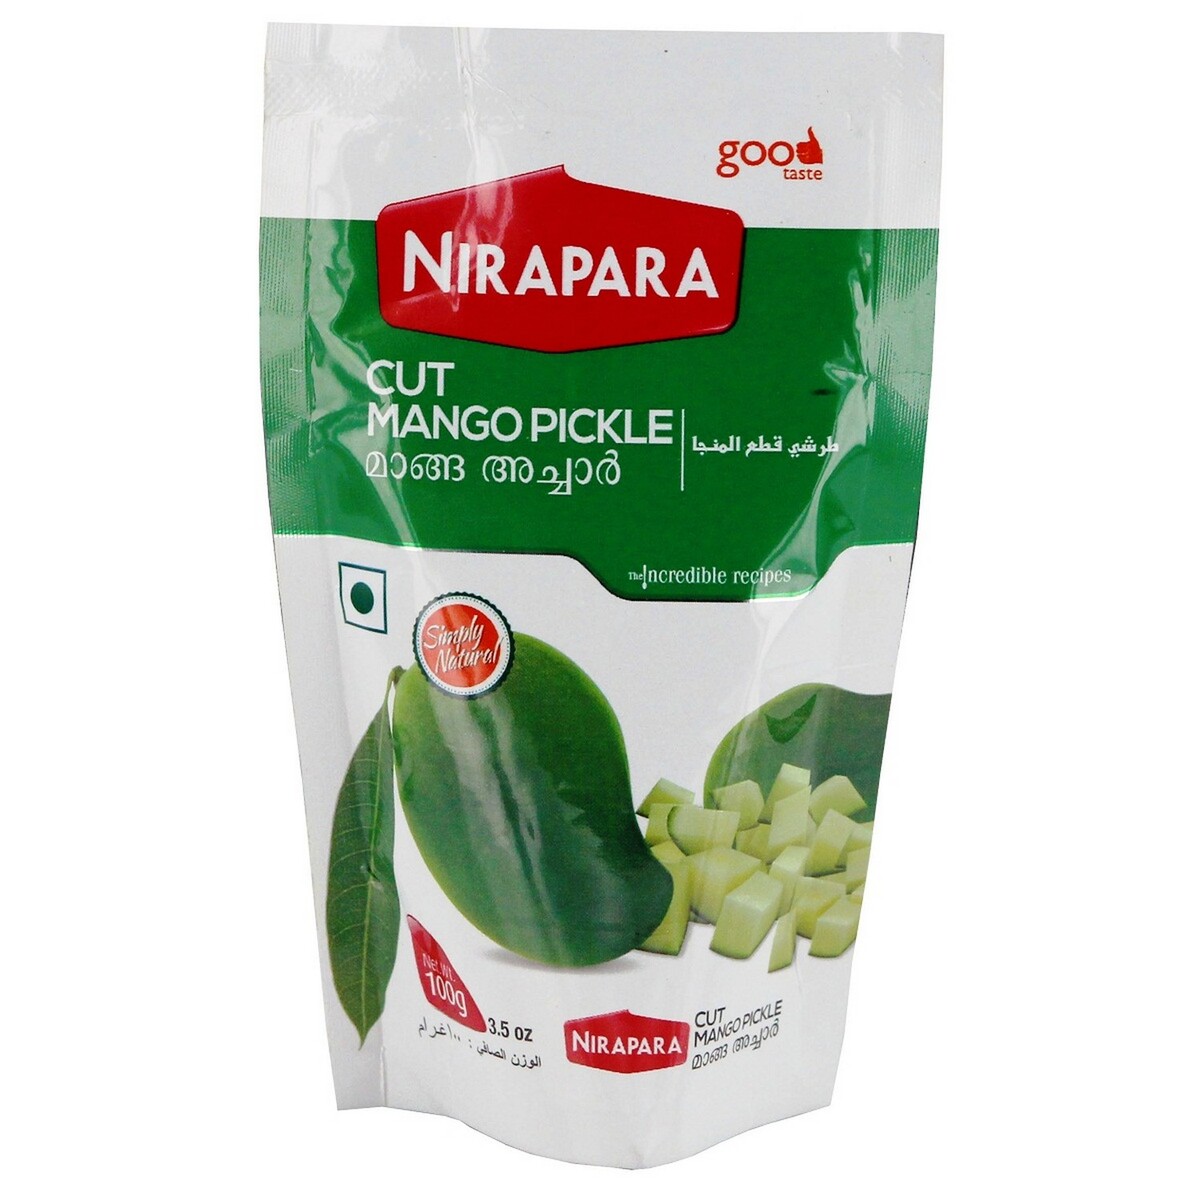 Nirapara Cut Mango Pickle 100g